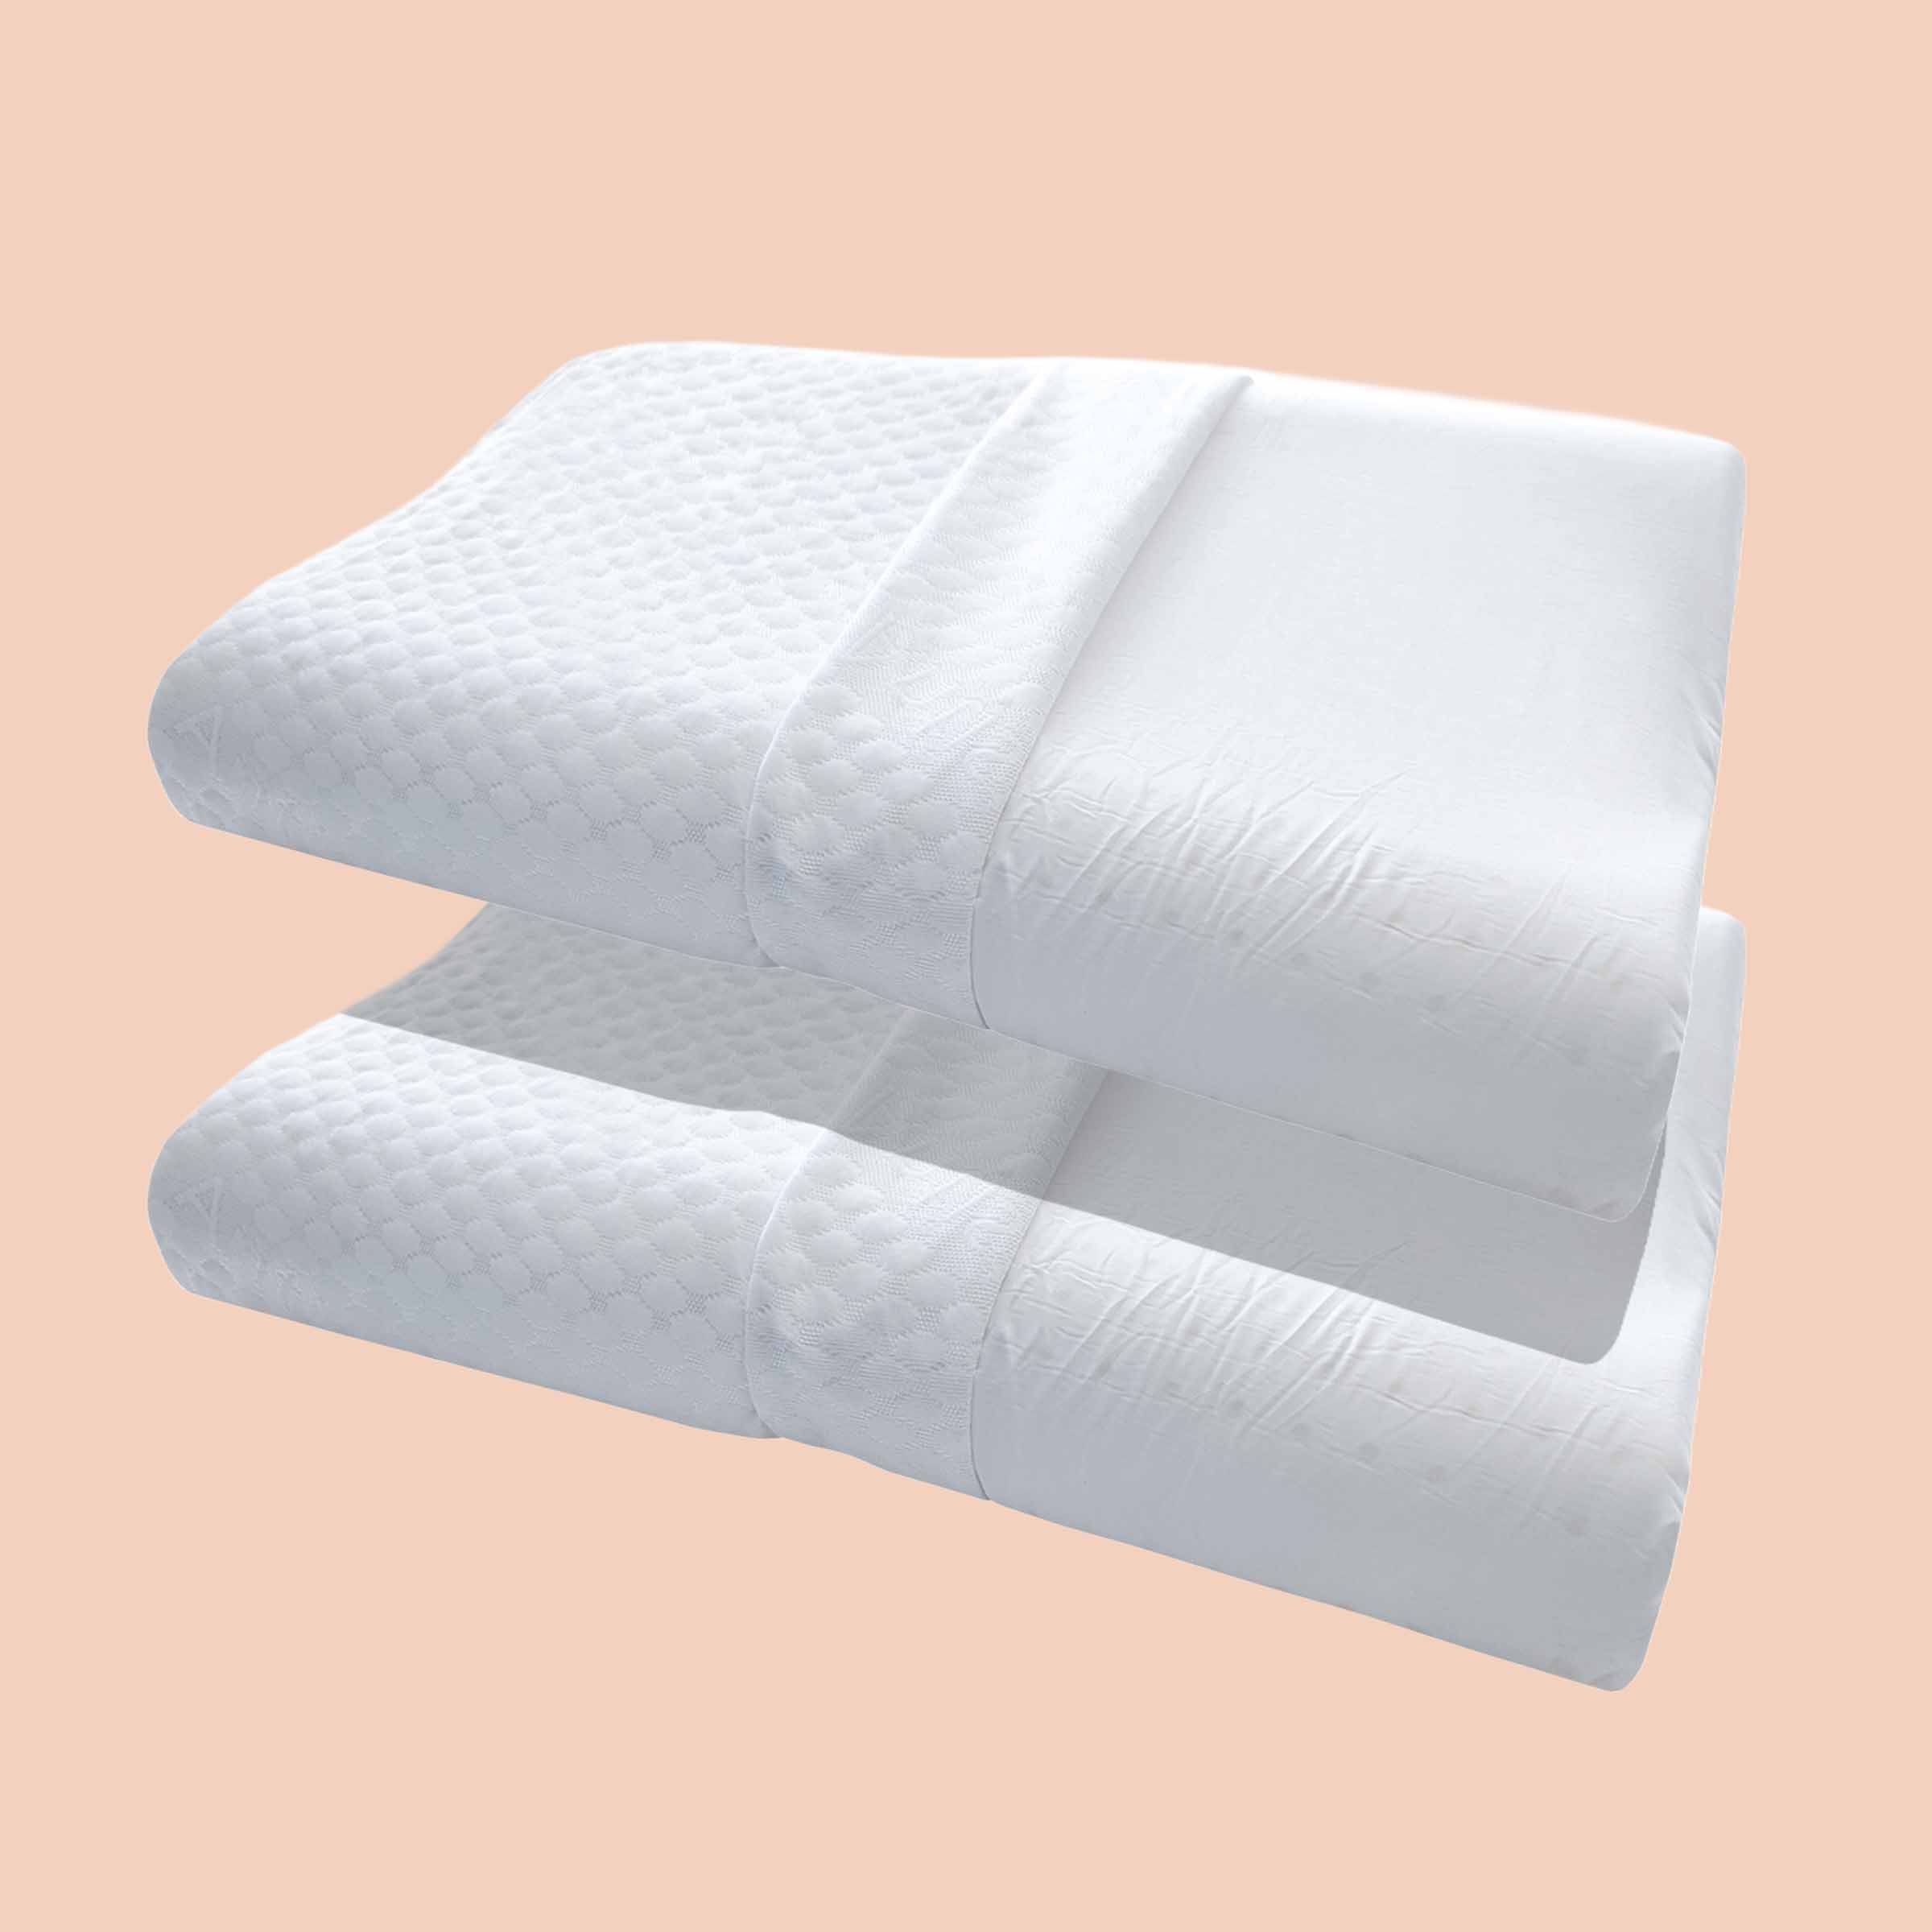 Due cuscini cervicali Bologna di Beliamo in un bundle, progettati per offrire supporto ergonomico e comfort durante il sonno